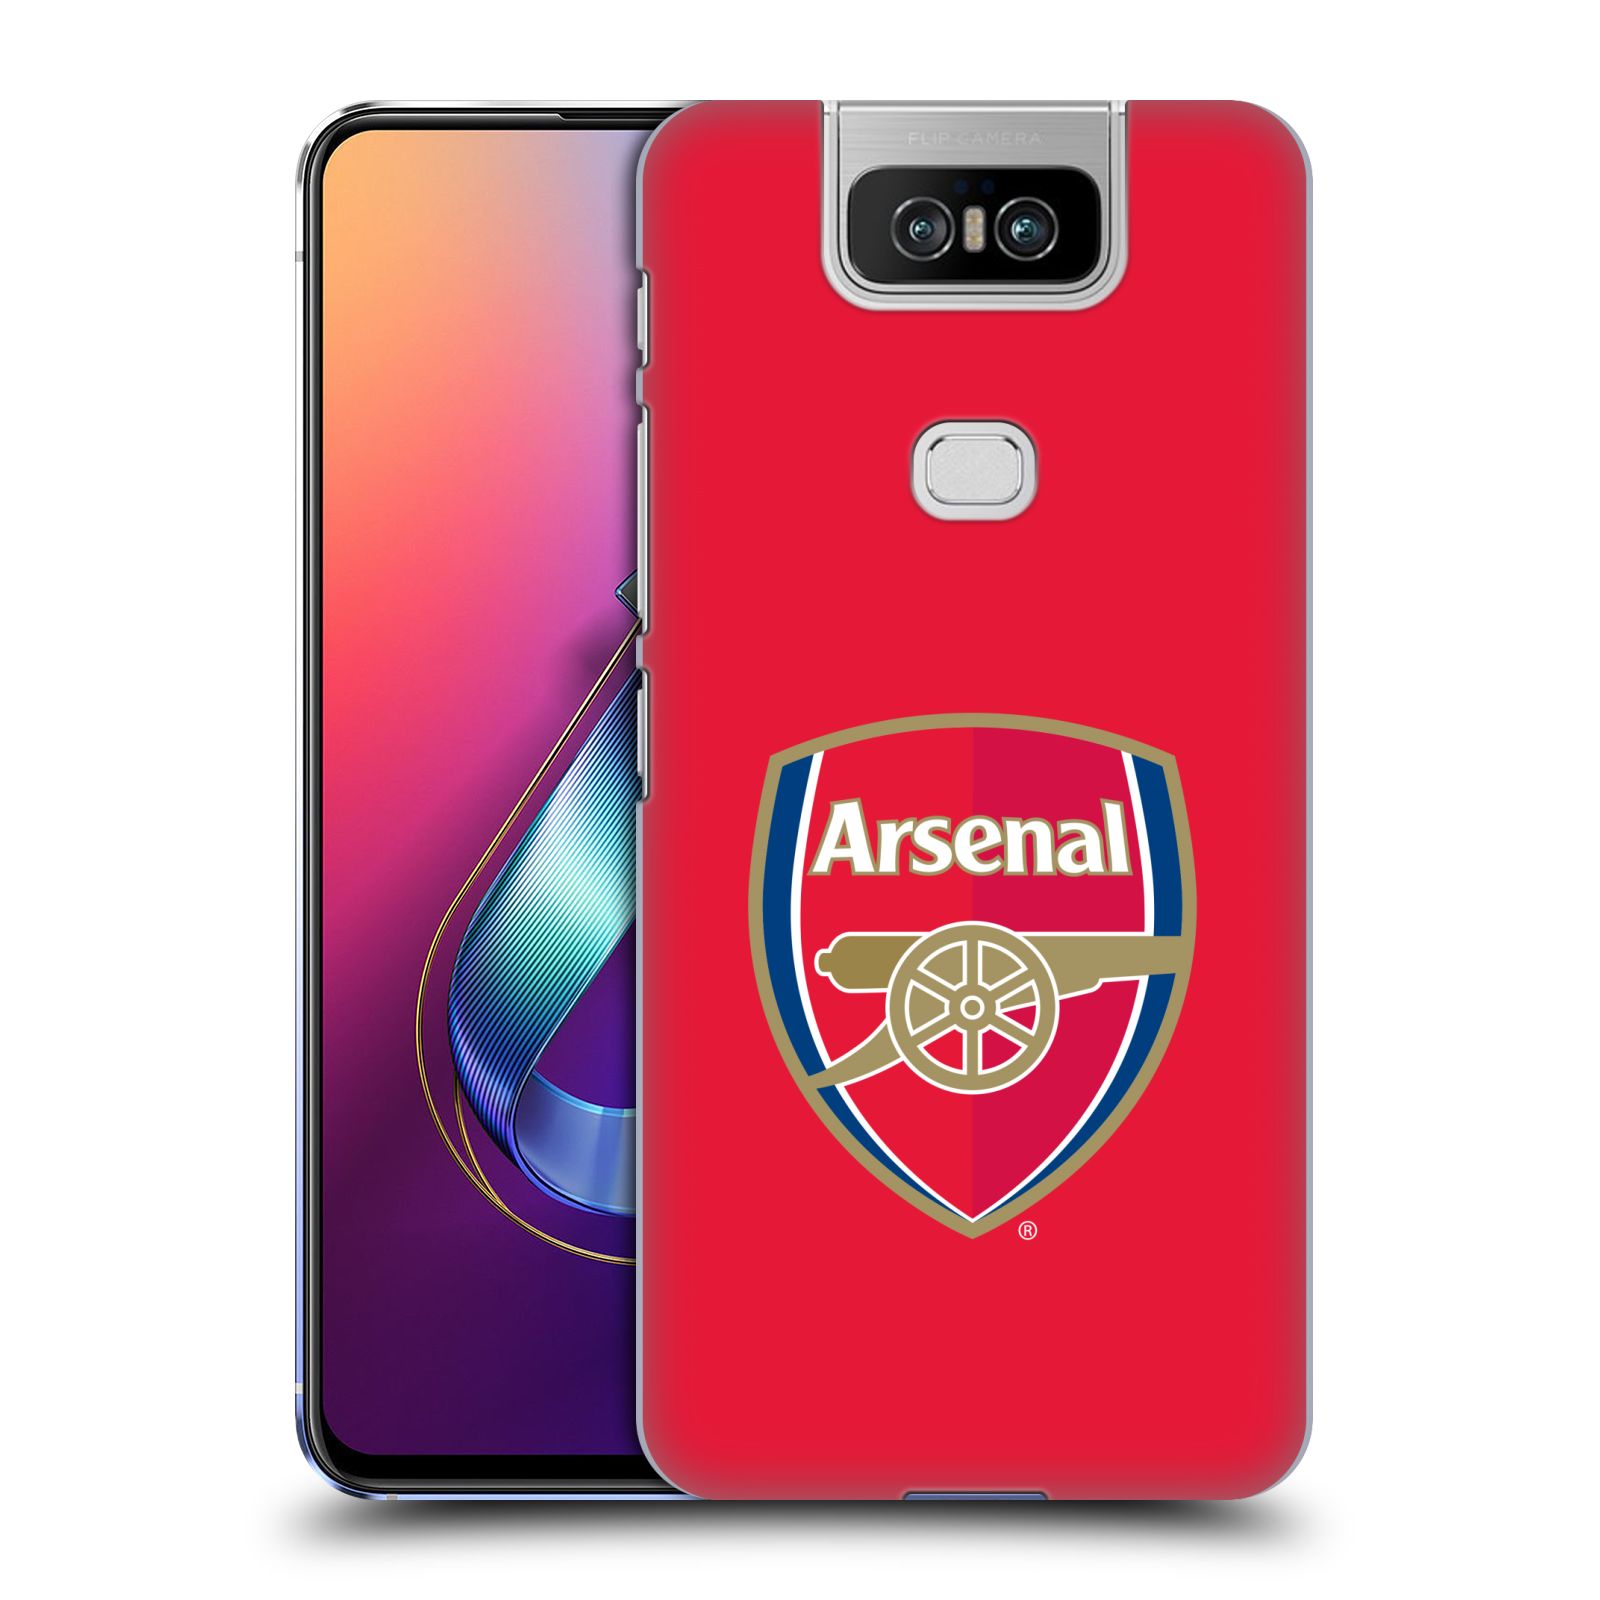 Pouzdro na mobil Asus Zenfone 6 ZS630KL - HEAD CASE - Fotbalový klub Arsenal znak barevný červené pozadí